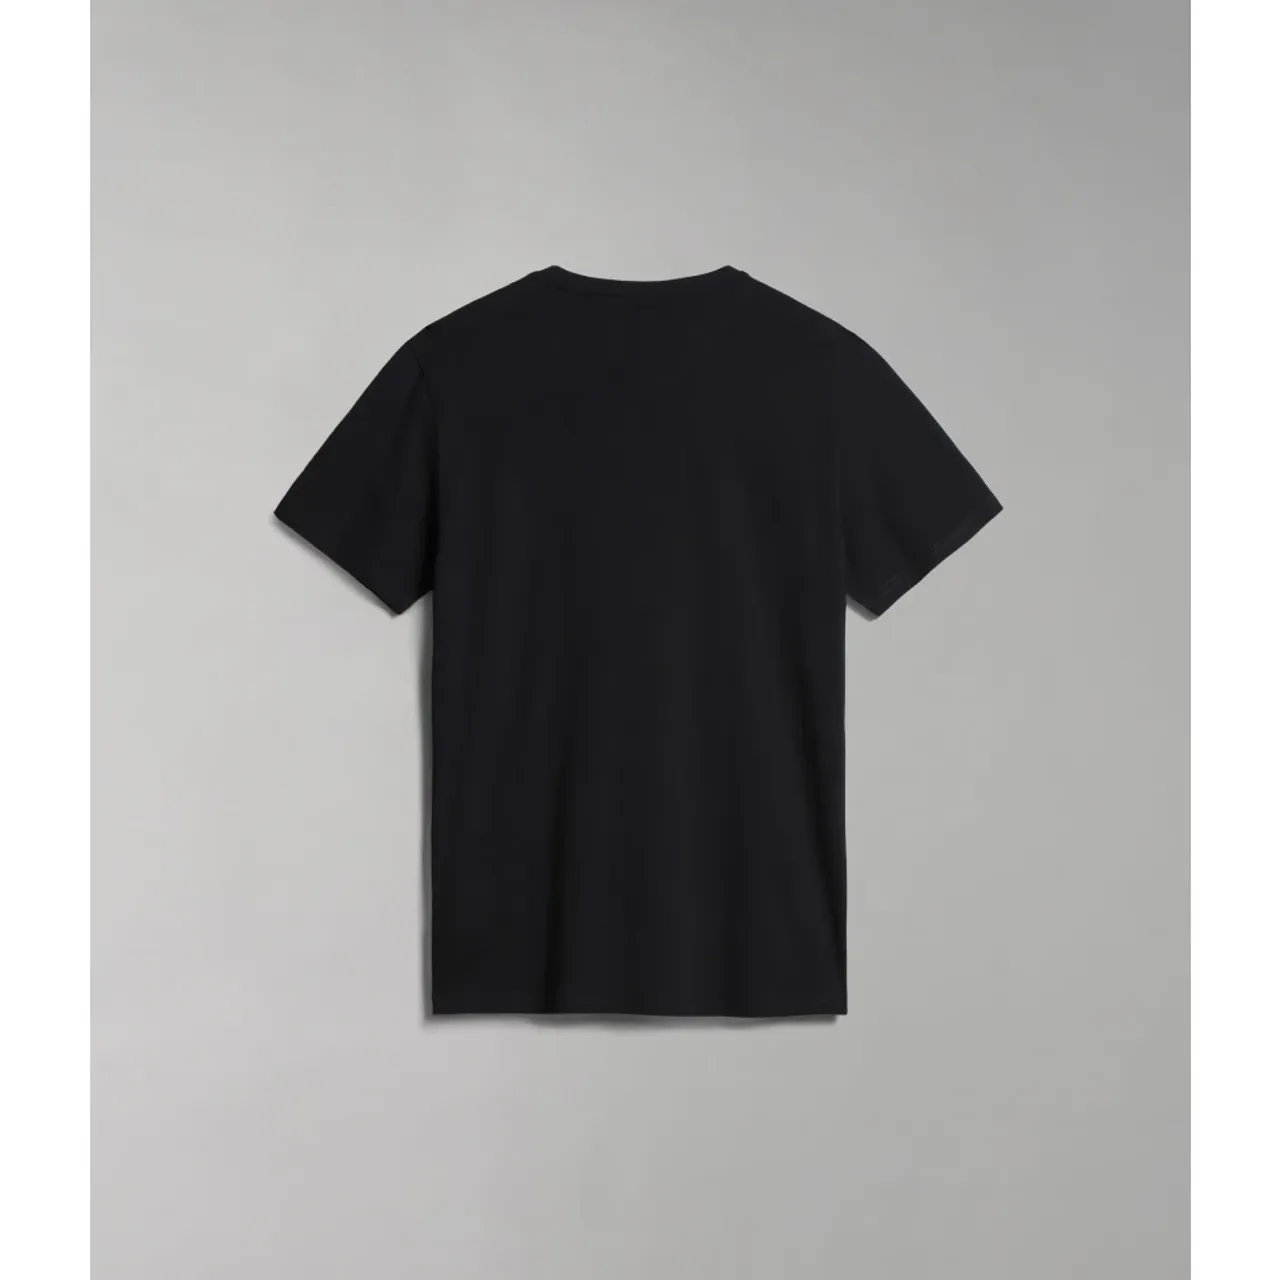 Napapijri , Short Sleeve T-Shirt ,Black male, Sizes: